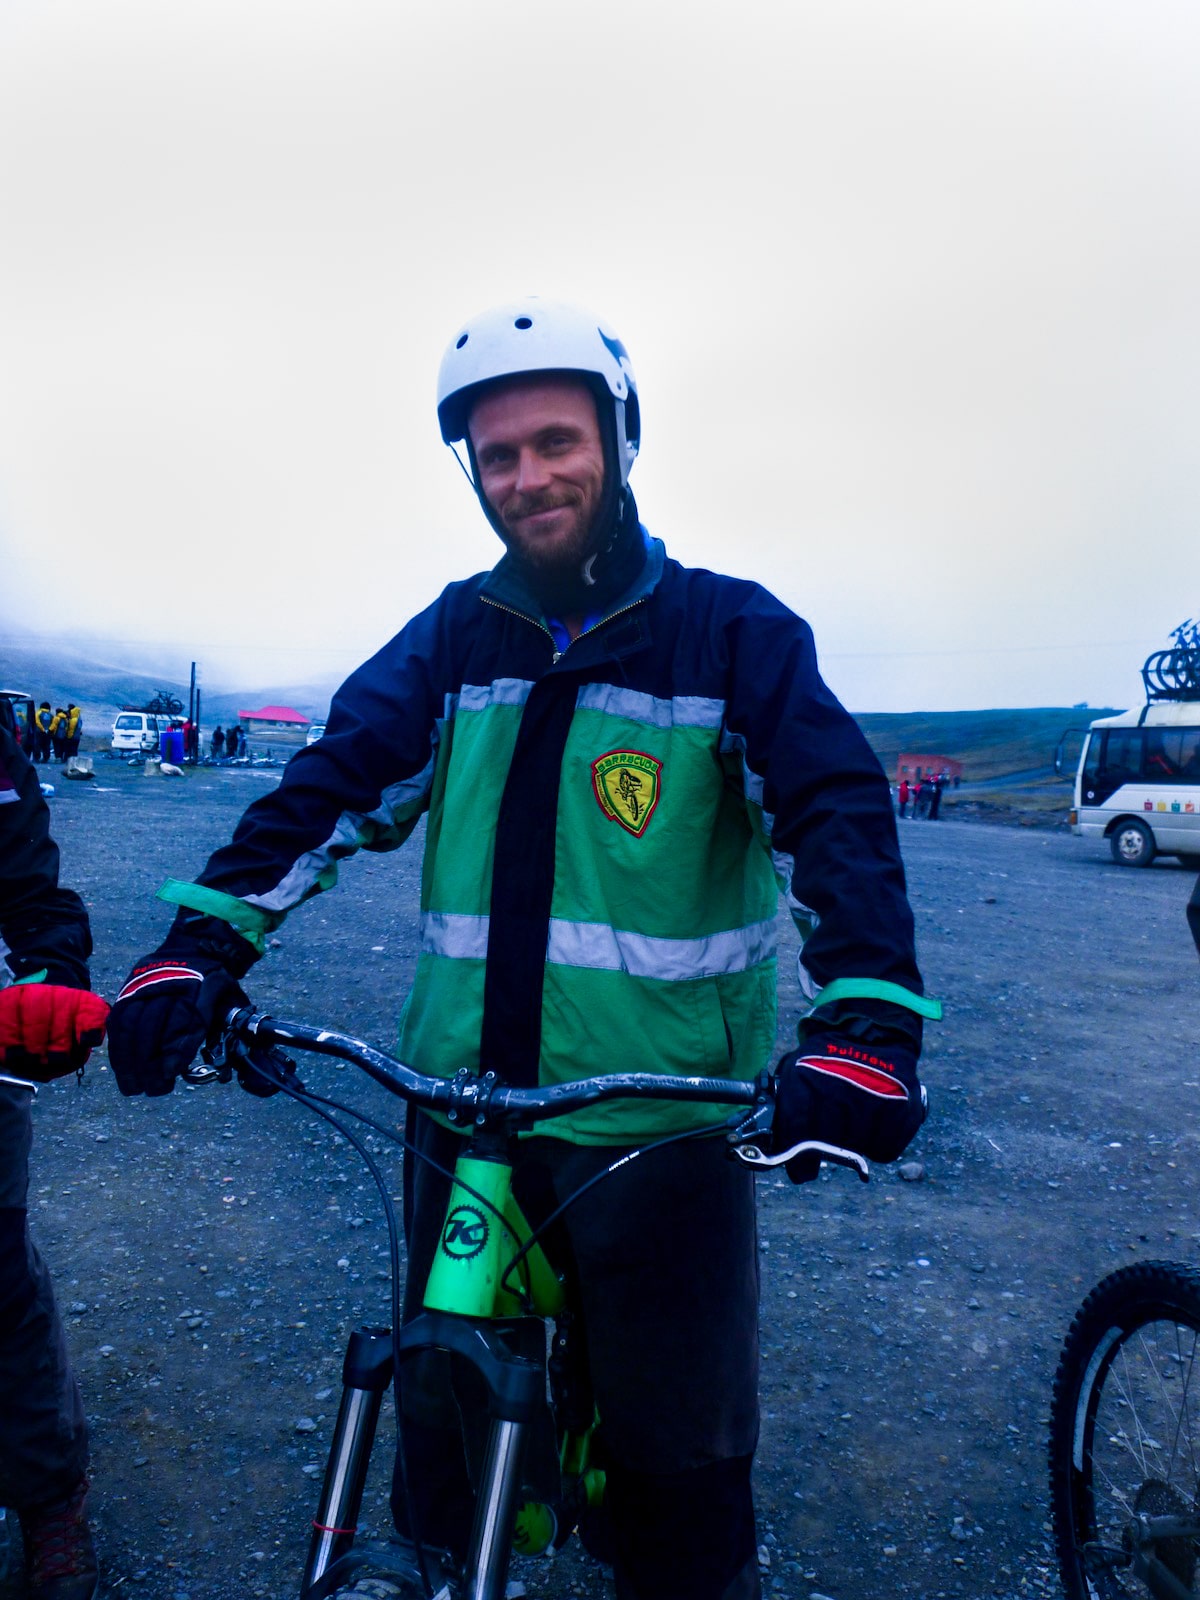 Male cyclist in green smiles on his bike in La Paz, Bolivia.